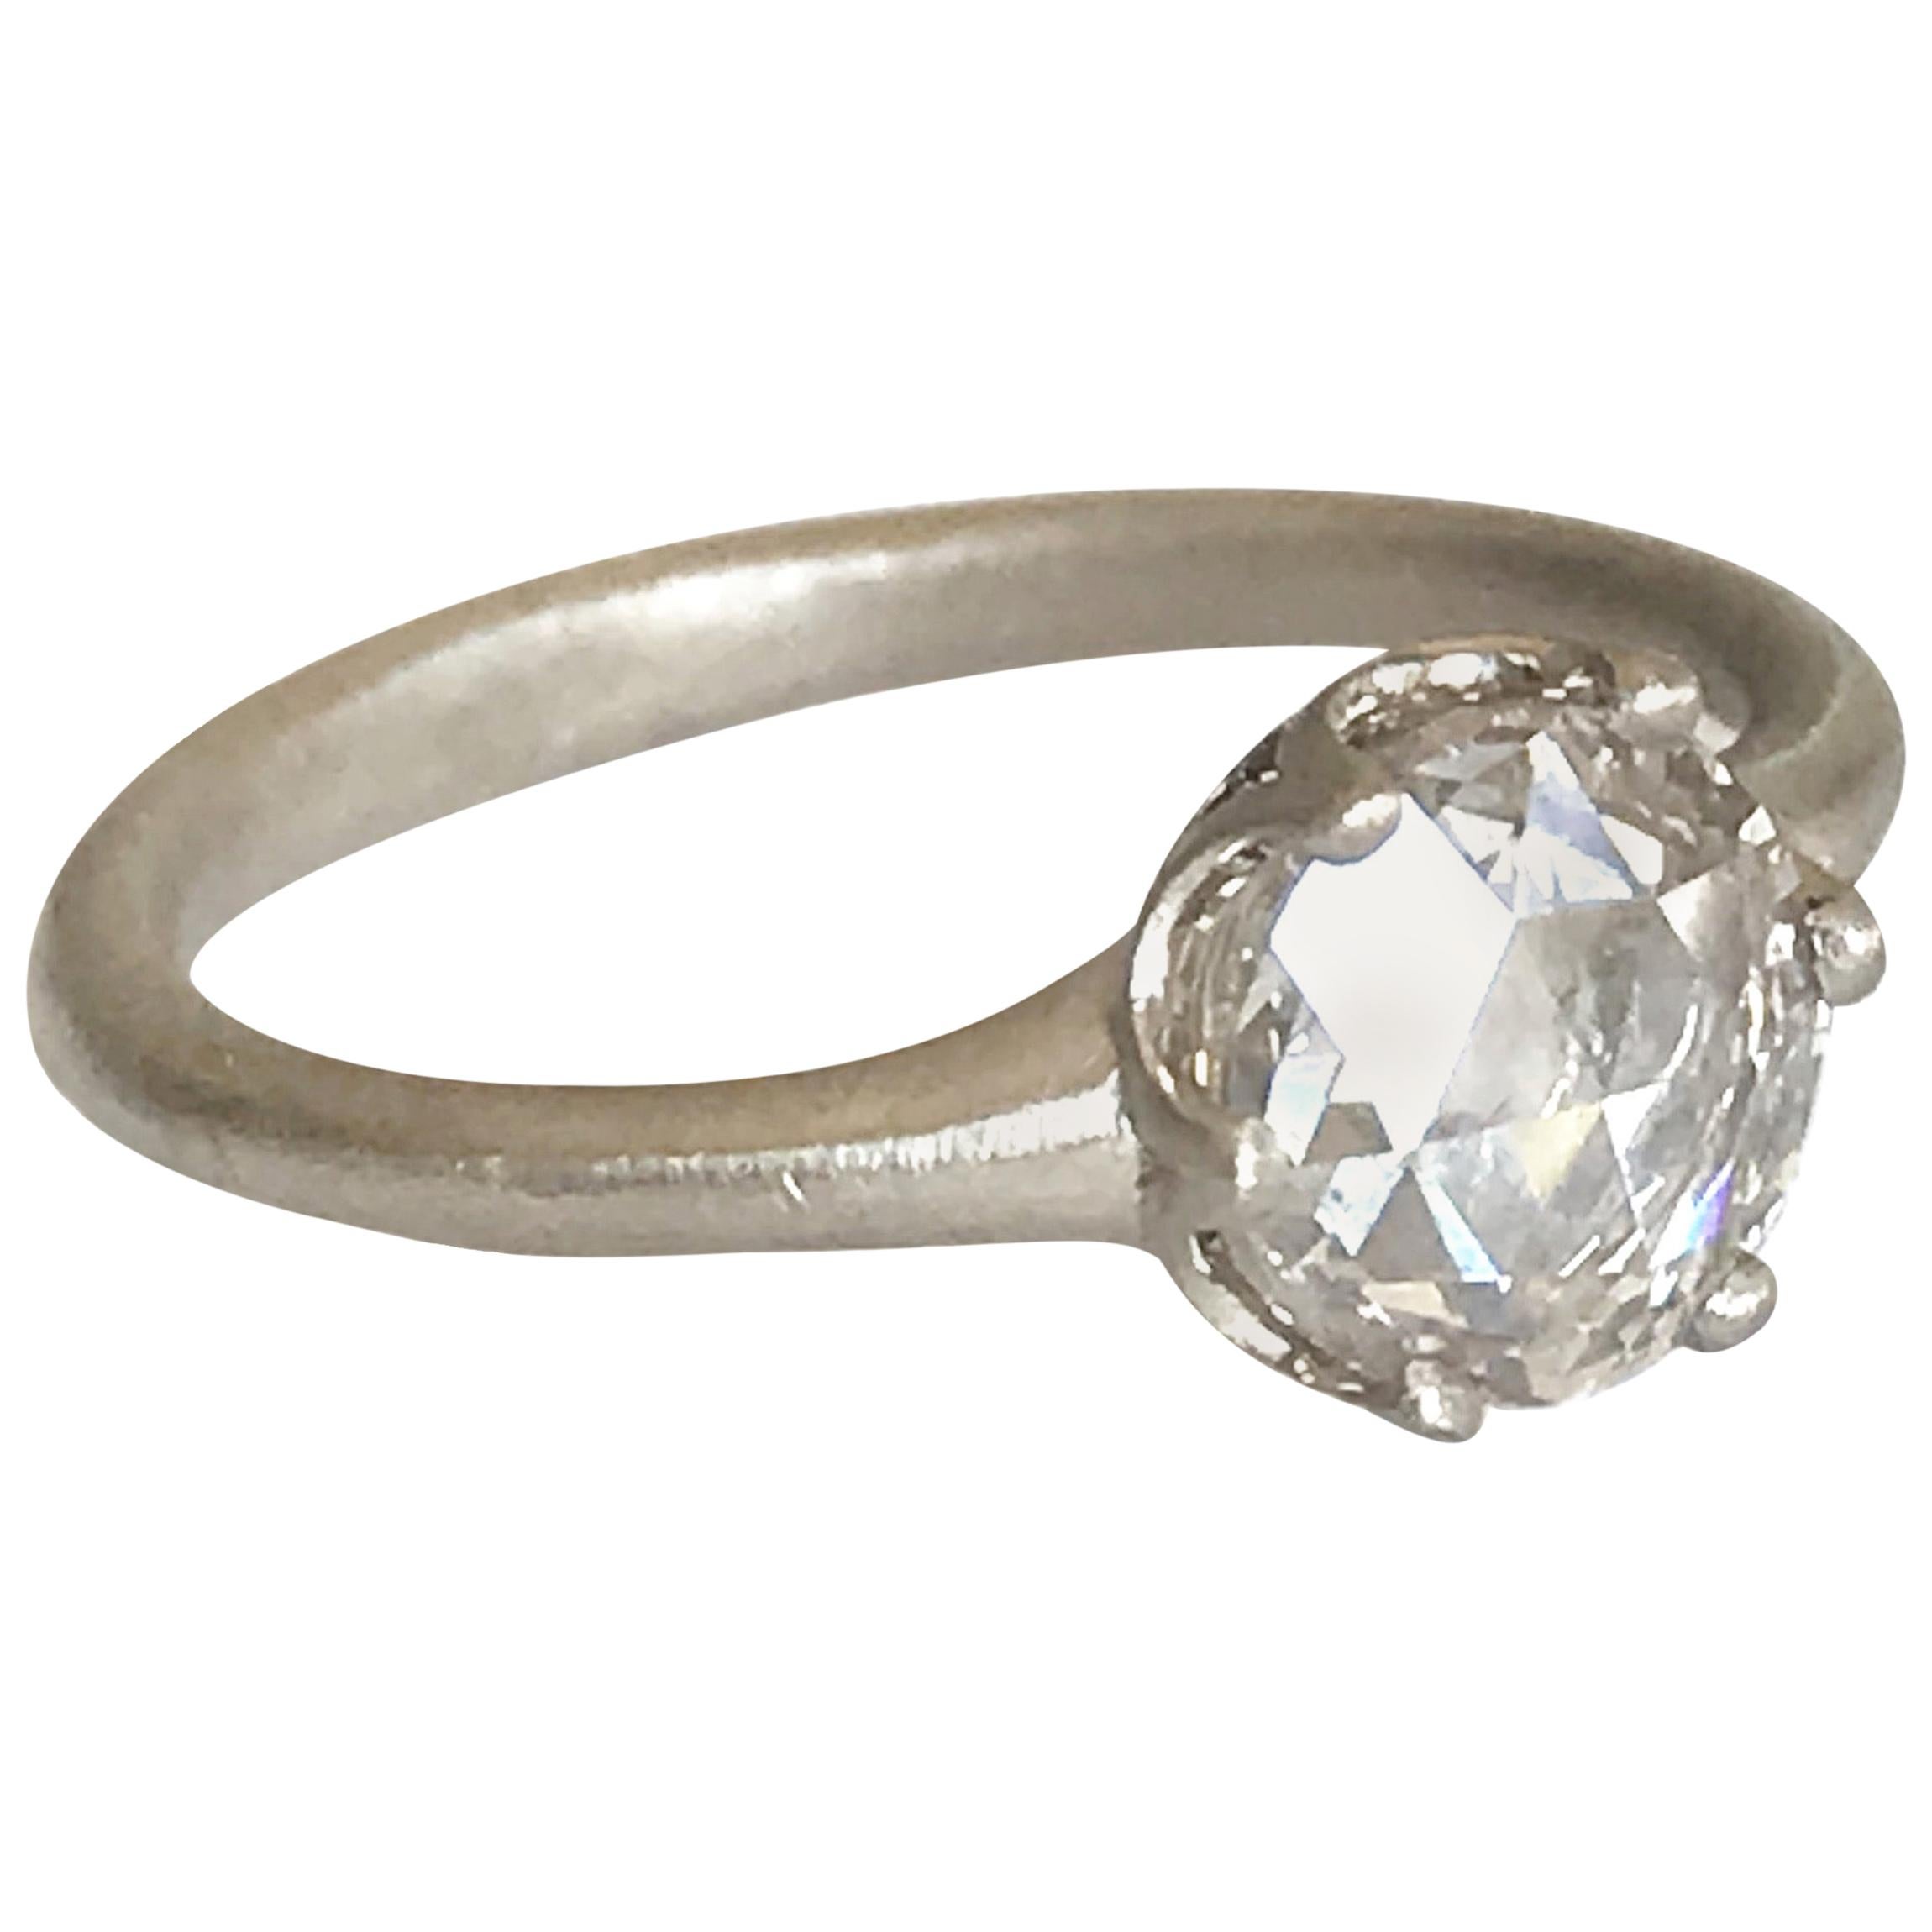 Dalben 1, 02 Carat Round Rose Cut Diamond Gold Ring